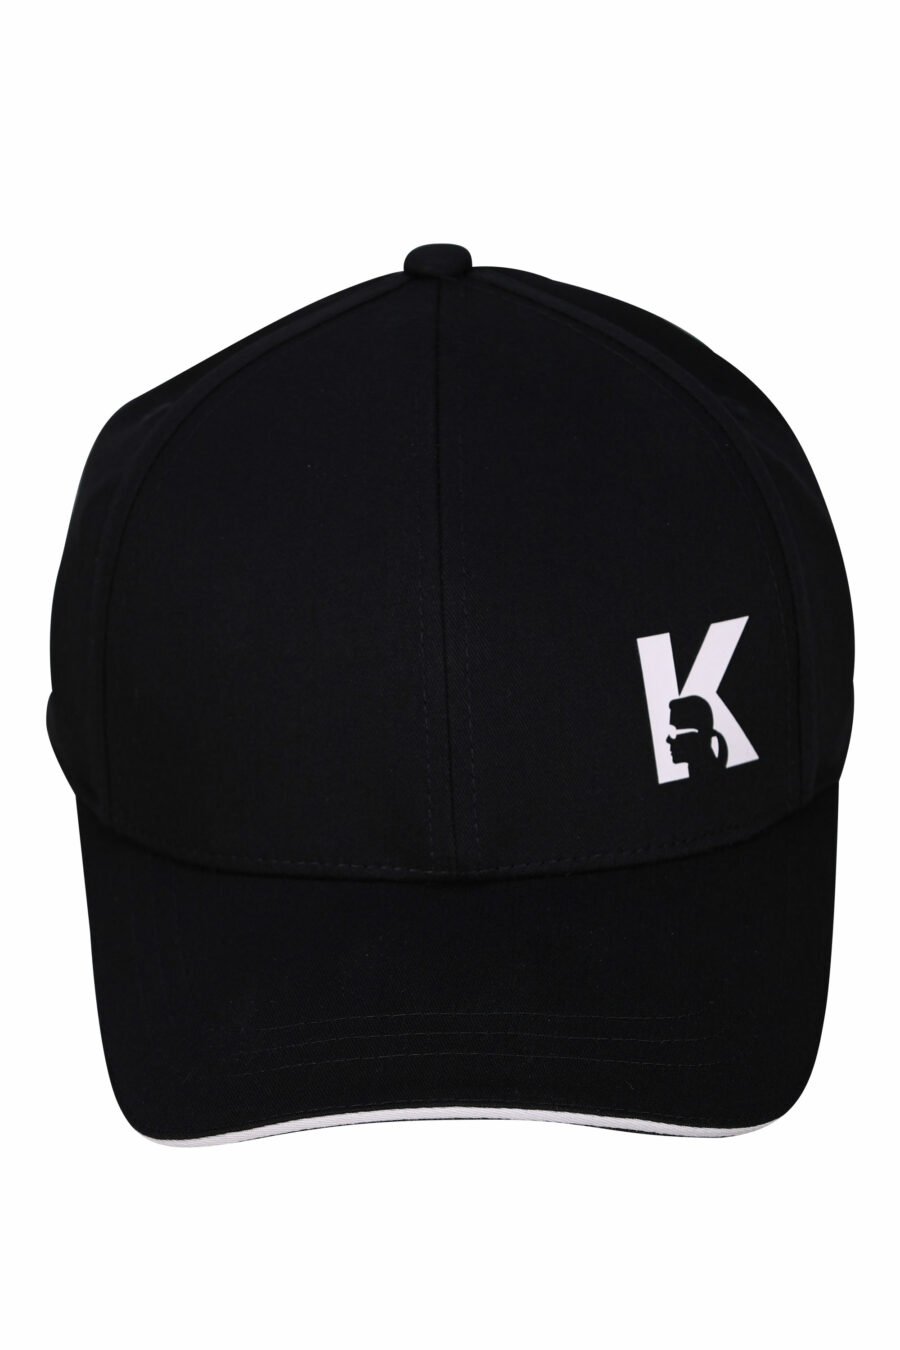 Gorra negra con logo "k" - 4062226697392